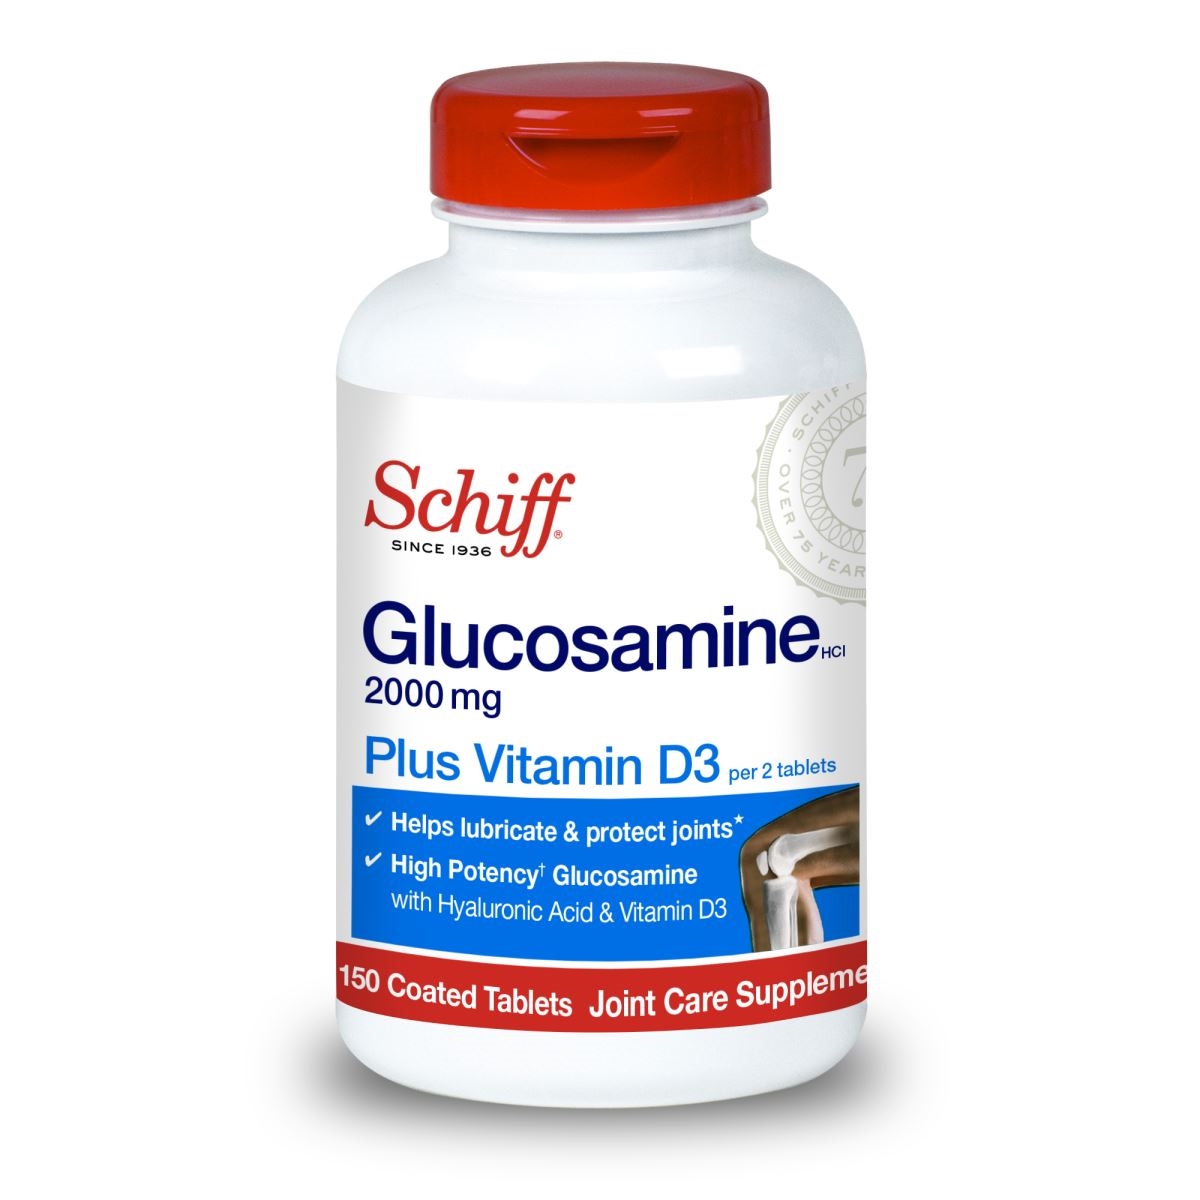 Có tác dụng phụ nào tồn tại khi sử dụng Glucosamine Plus Vitamin D3 không? Nếu có, có những tác dụng phụ gì?
